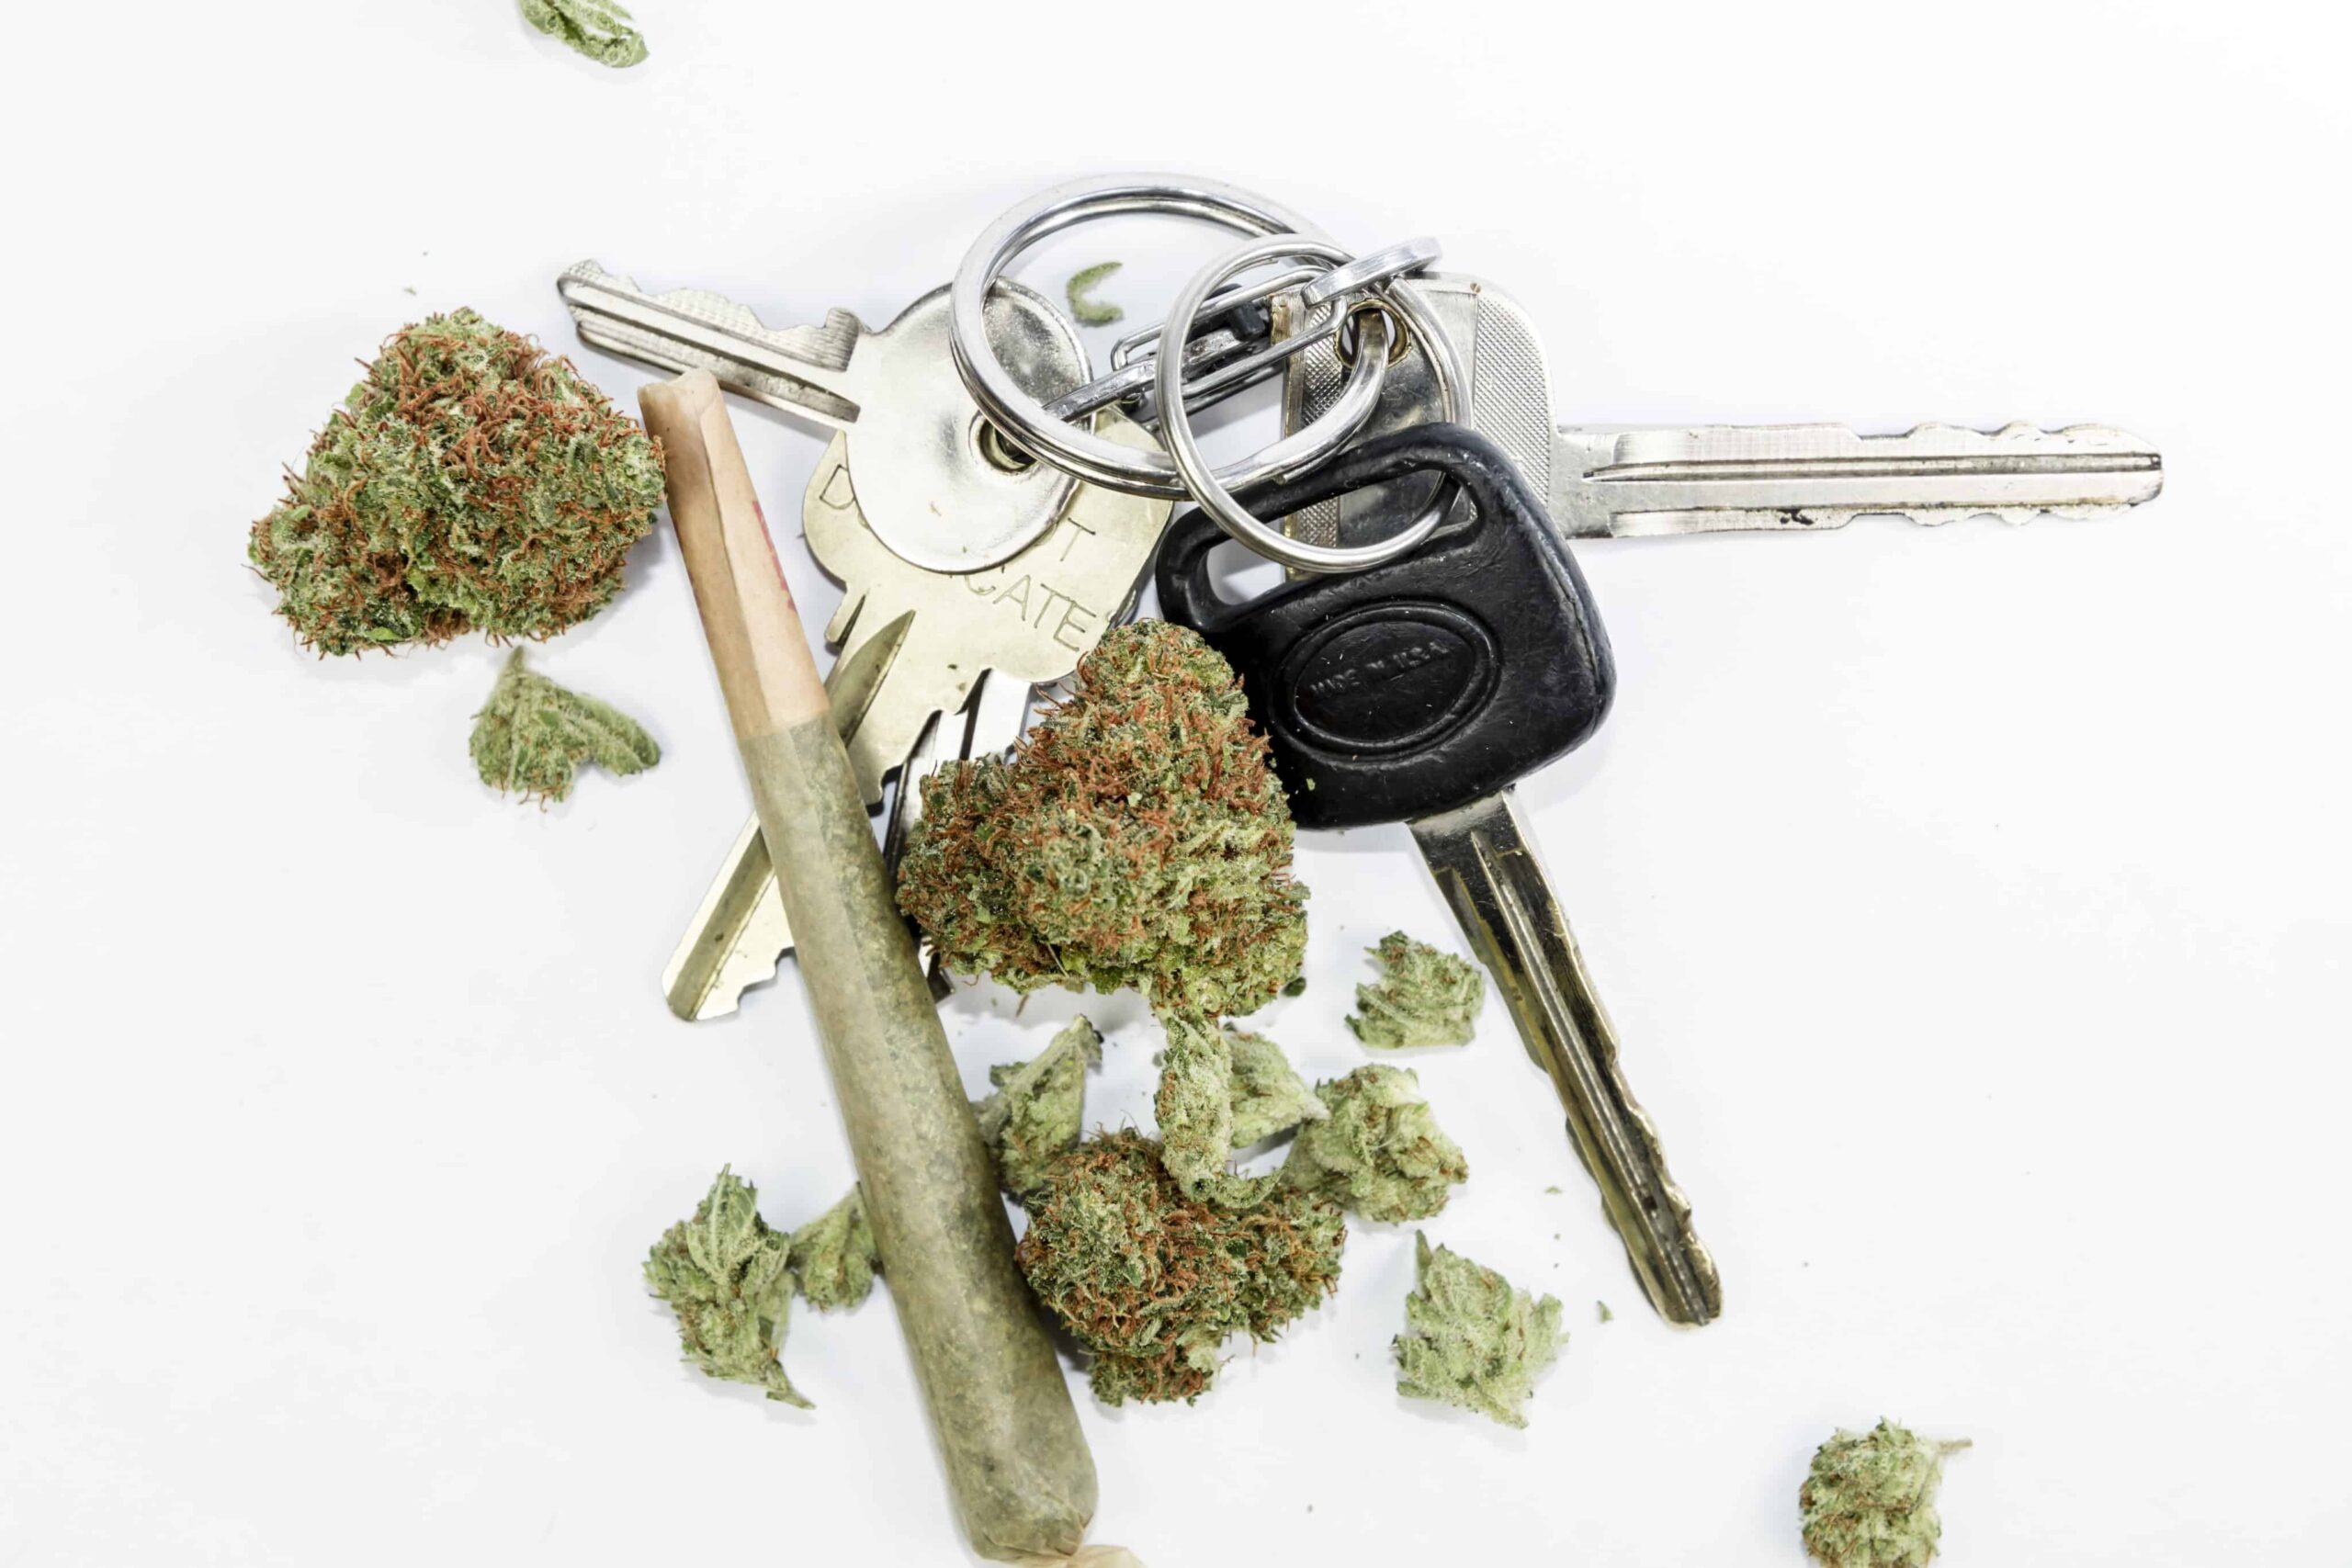 Un estudio canadiense vincula la legalización del cannabis con un aumento de los accidentes automovilísticos